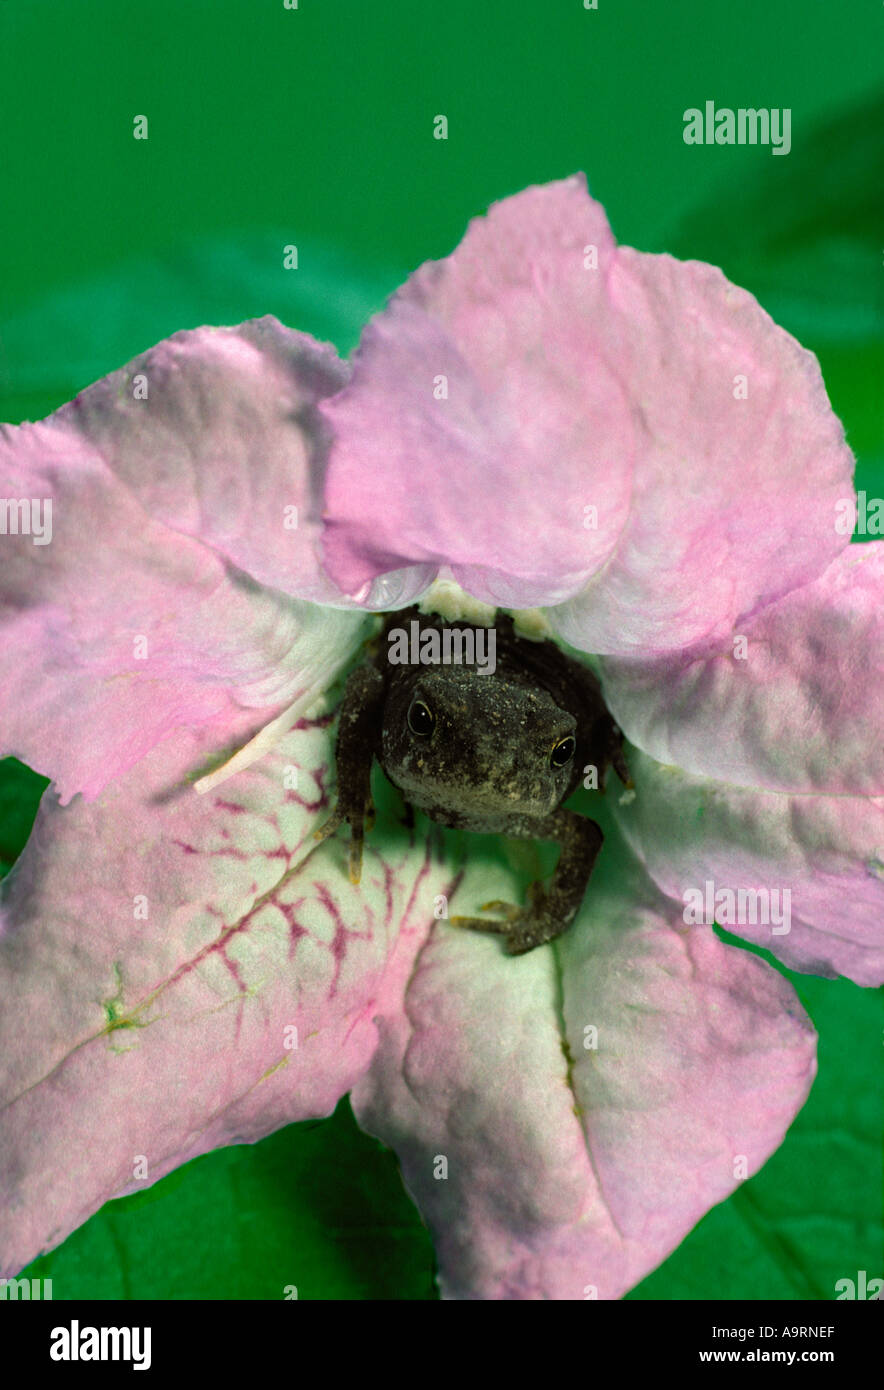 Biene-Überraschung - schwere Cricket Frosch trägt glamourösen Blume Kleid, Ruellia, warten darauf, etwas zu essen, Midwest USA überraschen Stockfoto